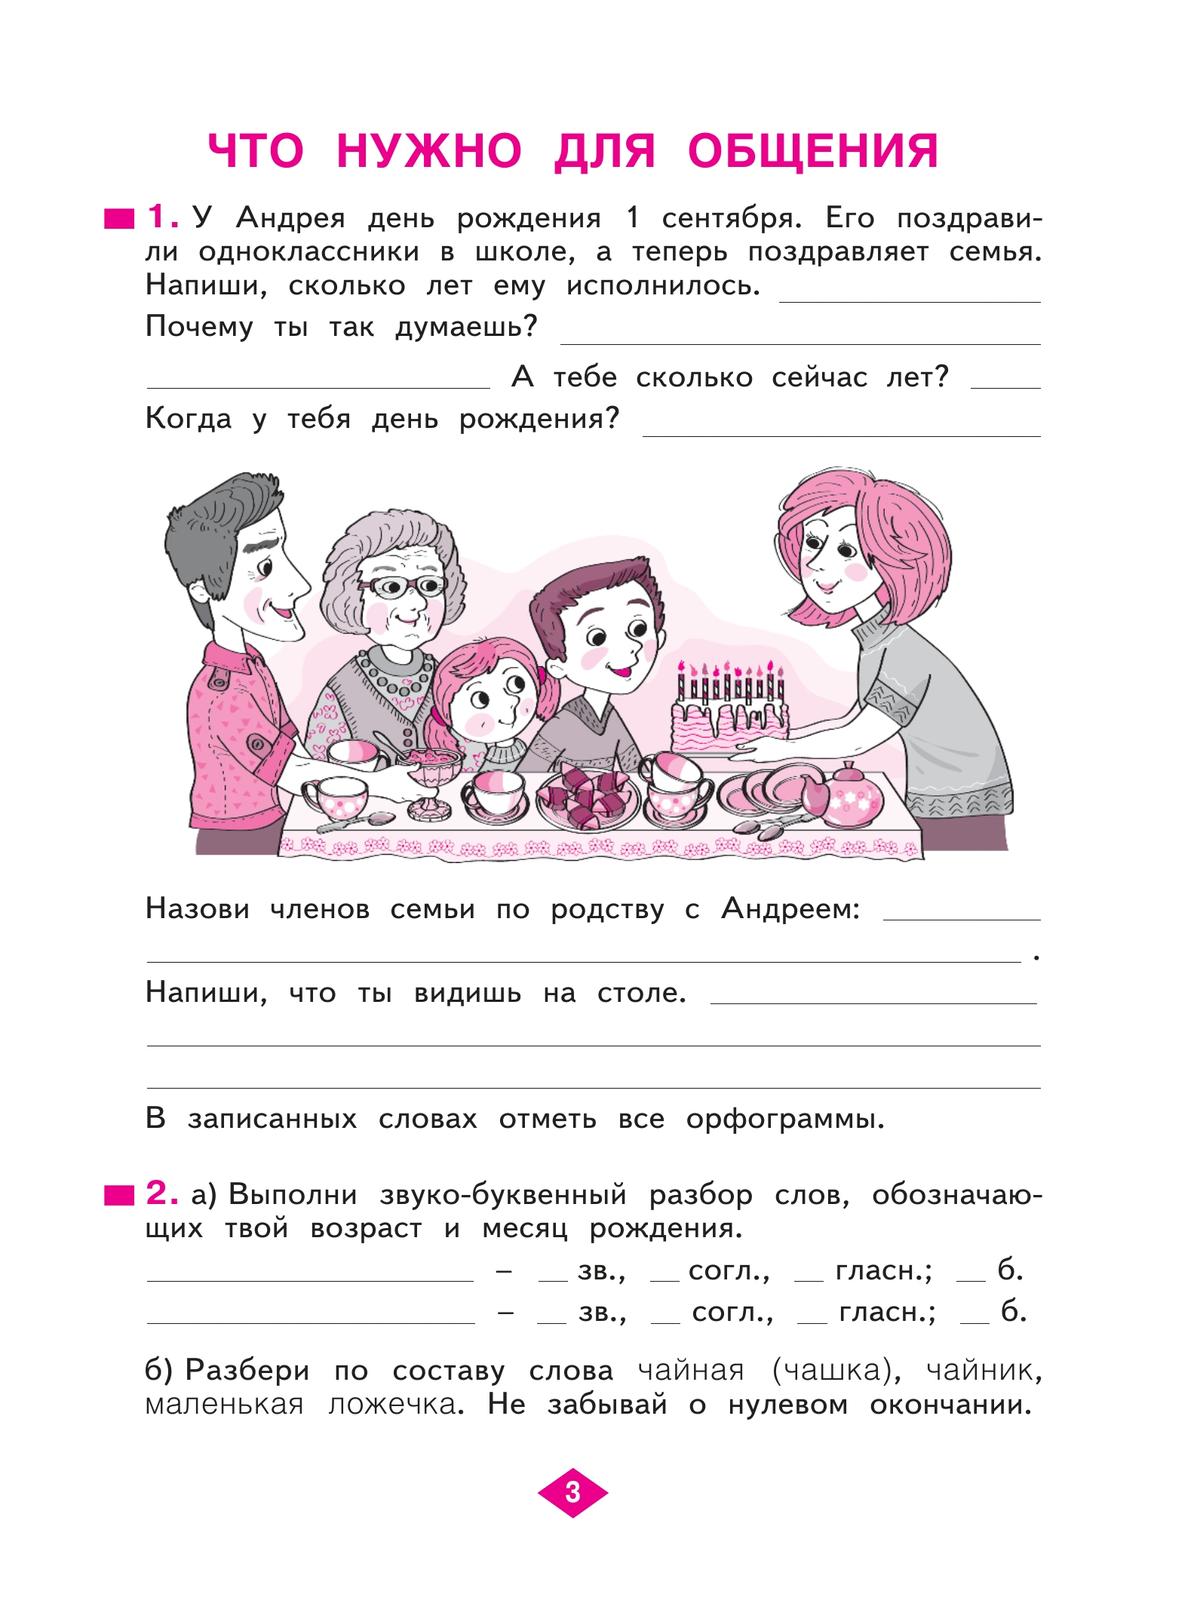 Русский язык. Рабочая тетрадь. 4 класс. В 4-х частях. Часть 1 6